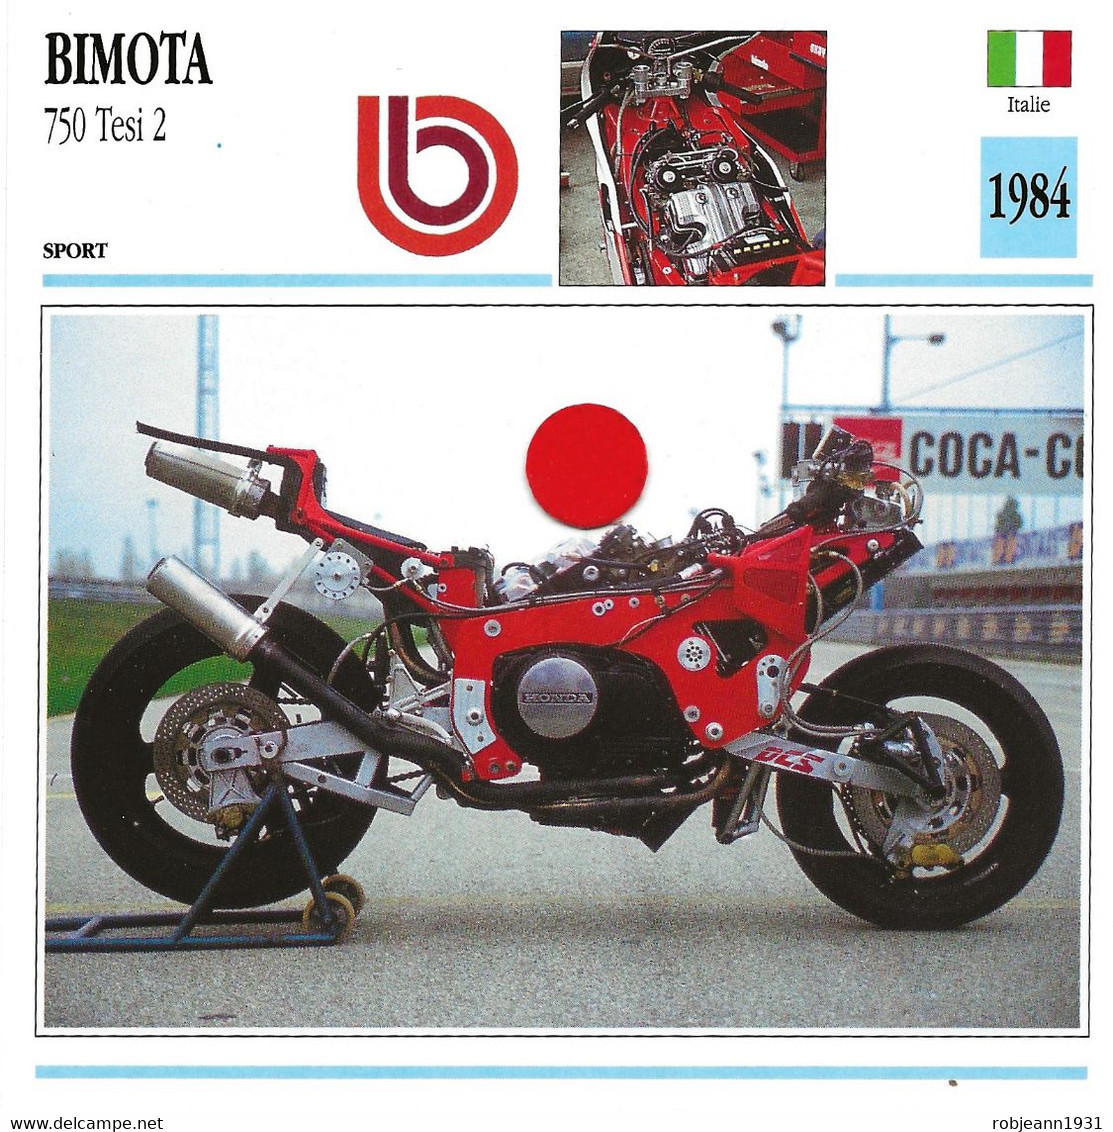 Transports - Sports Moto - Carte Fiche Technique Moto - Bimota 750 Tesi 2 ( Sport )( Italie 1984 ) - Sport Moto